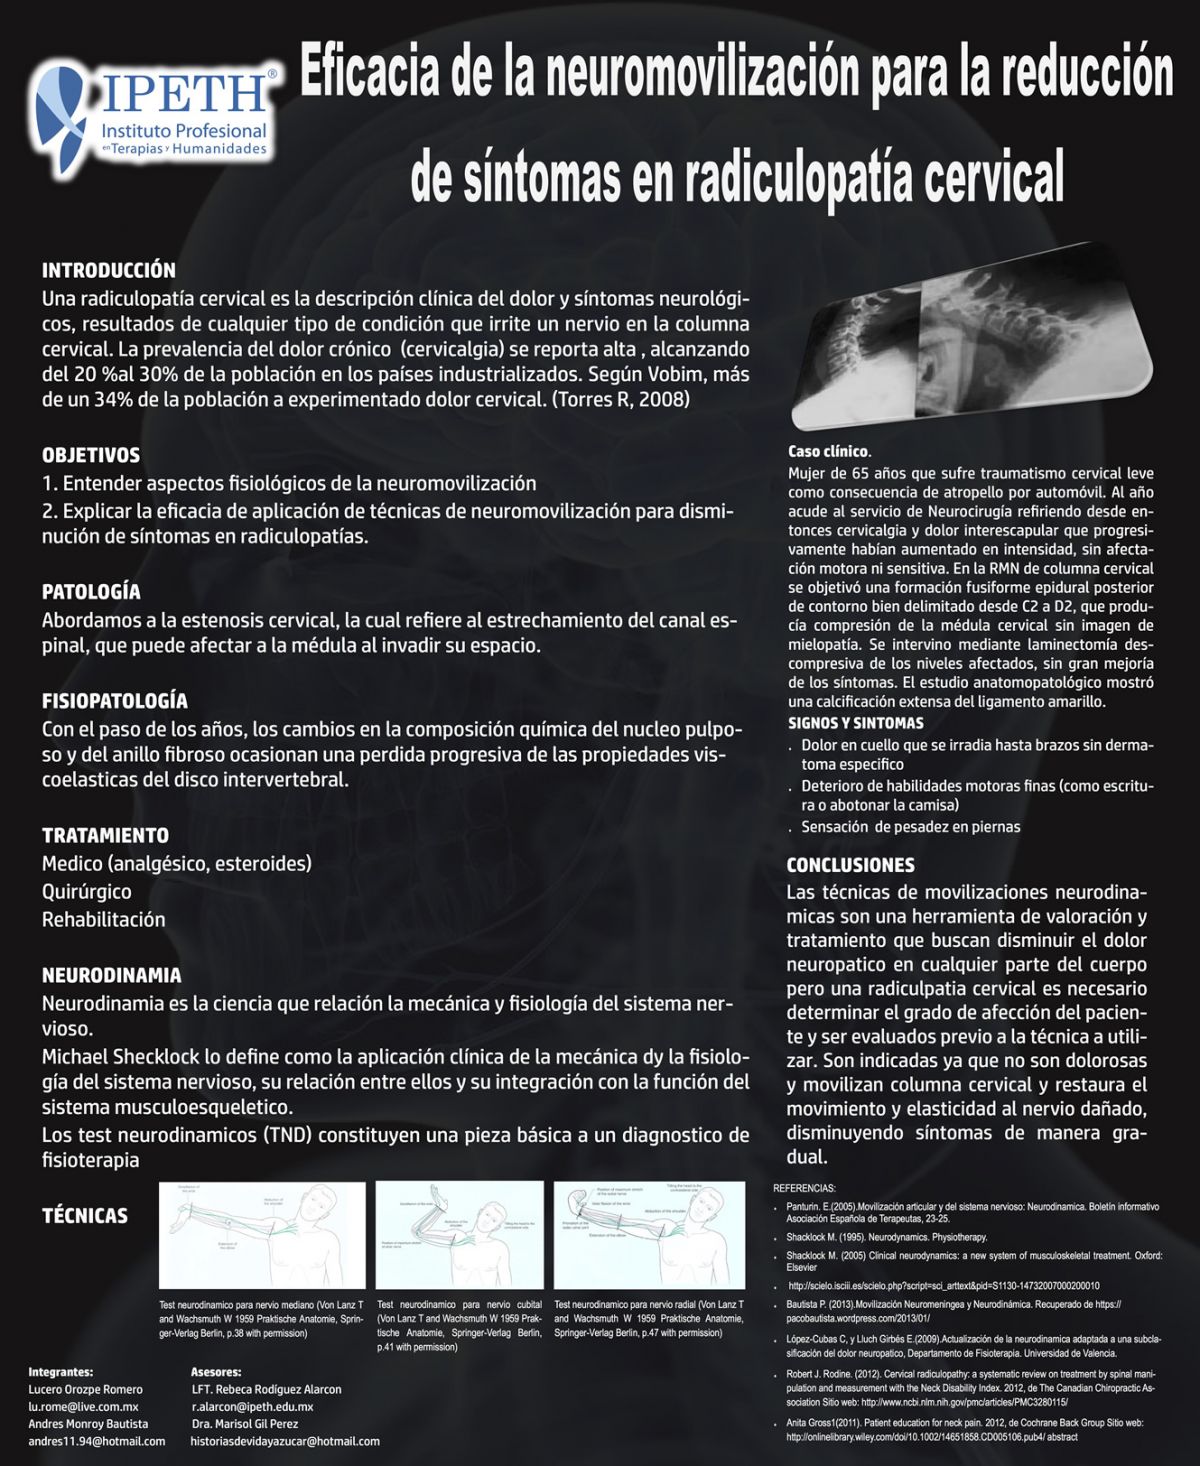 Eficacia de la neurodinamia para la reducción de síntomas en radiculopatia cervical